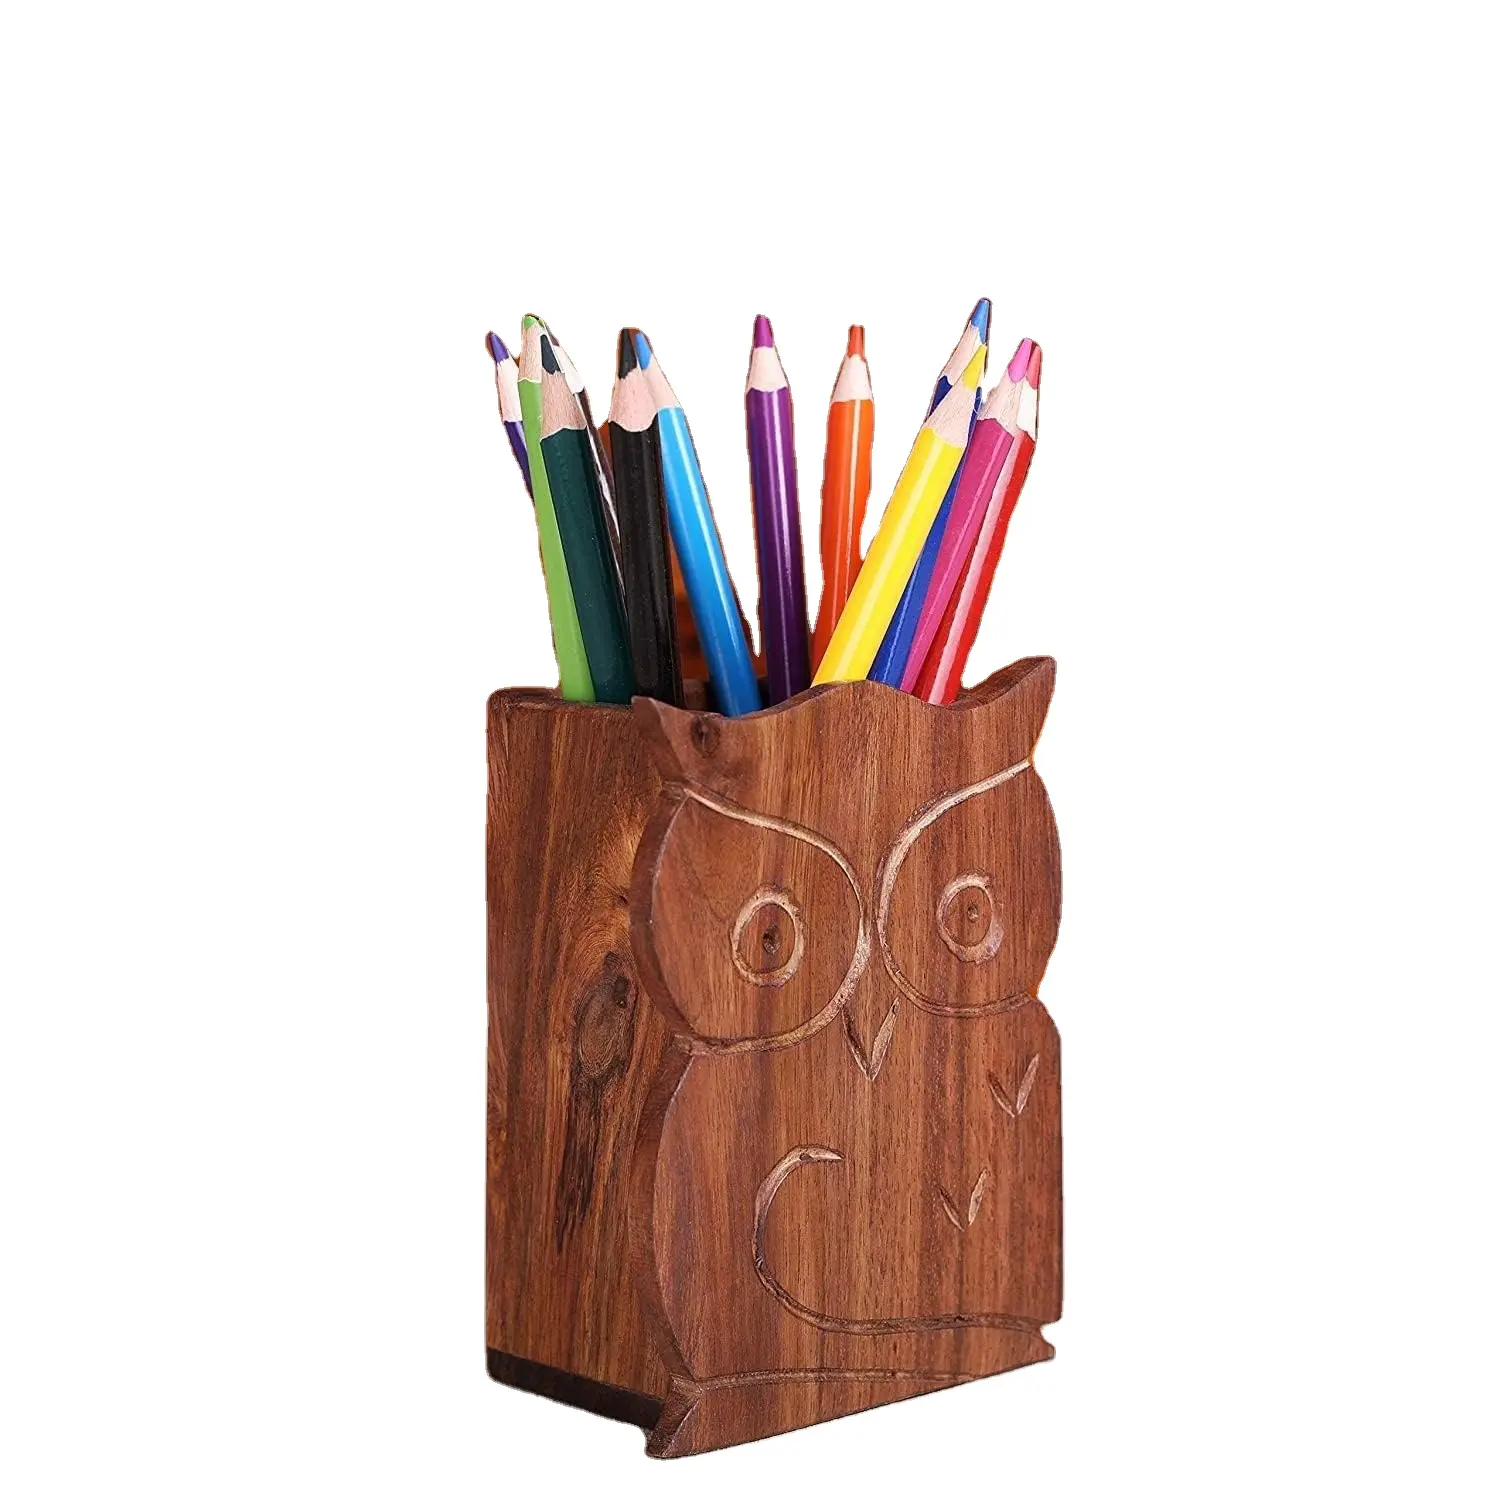 Porta-canetas e porta-lápis de madeira para escritório, porta-canetas e porta-lápis de madeira com desenho de coruja, artesanal tradicional, ideal para uso escolar